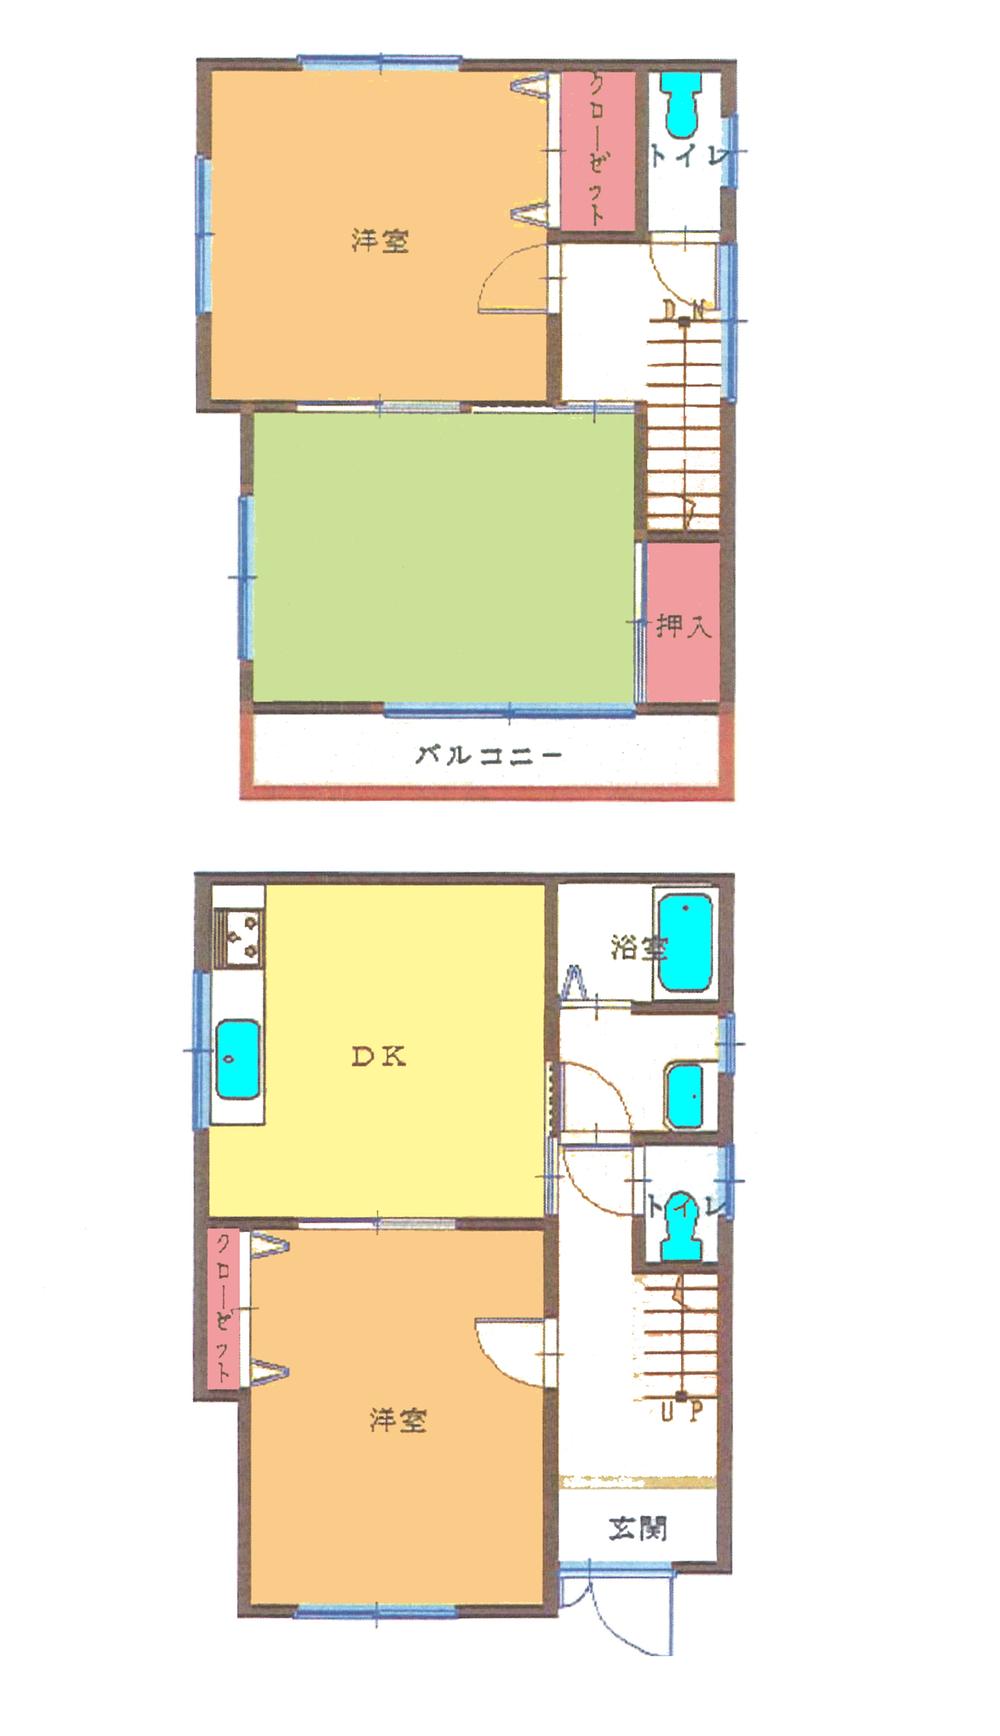 Floor plan. 21,800,000 yen, 3DK, Land area 100.21 sq m , Building area 76.17 sq m floor plan